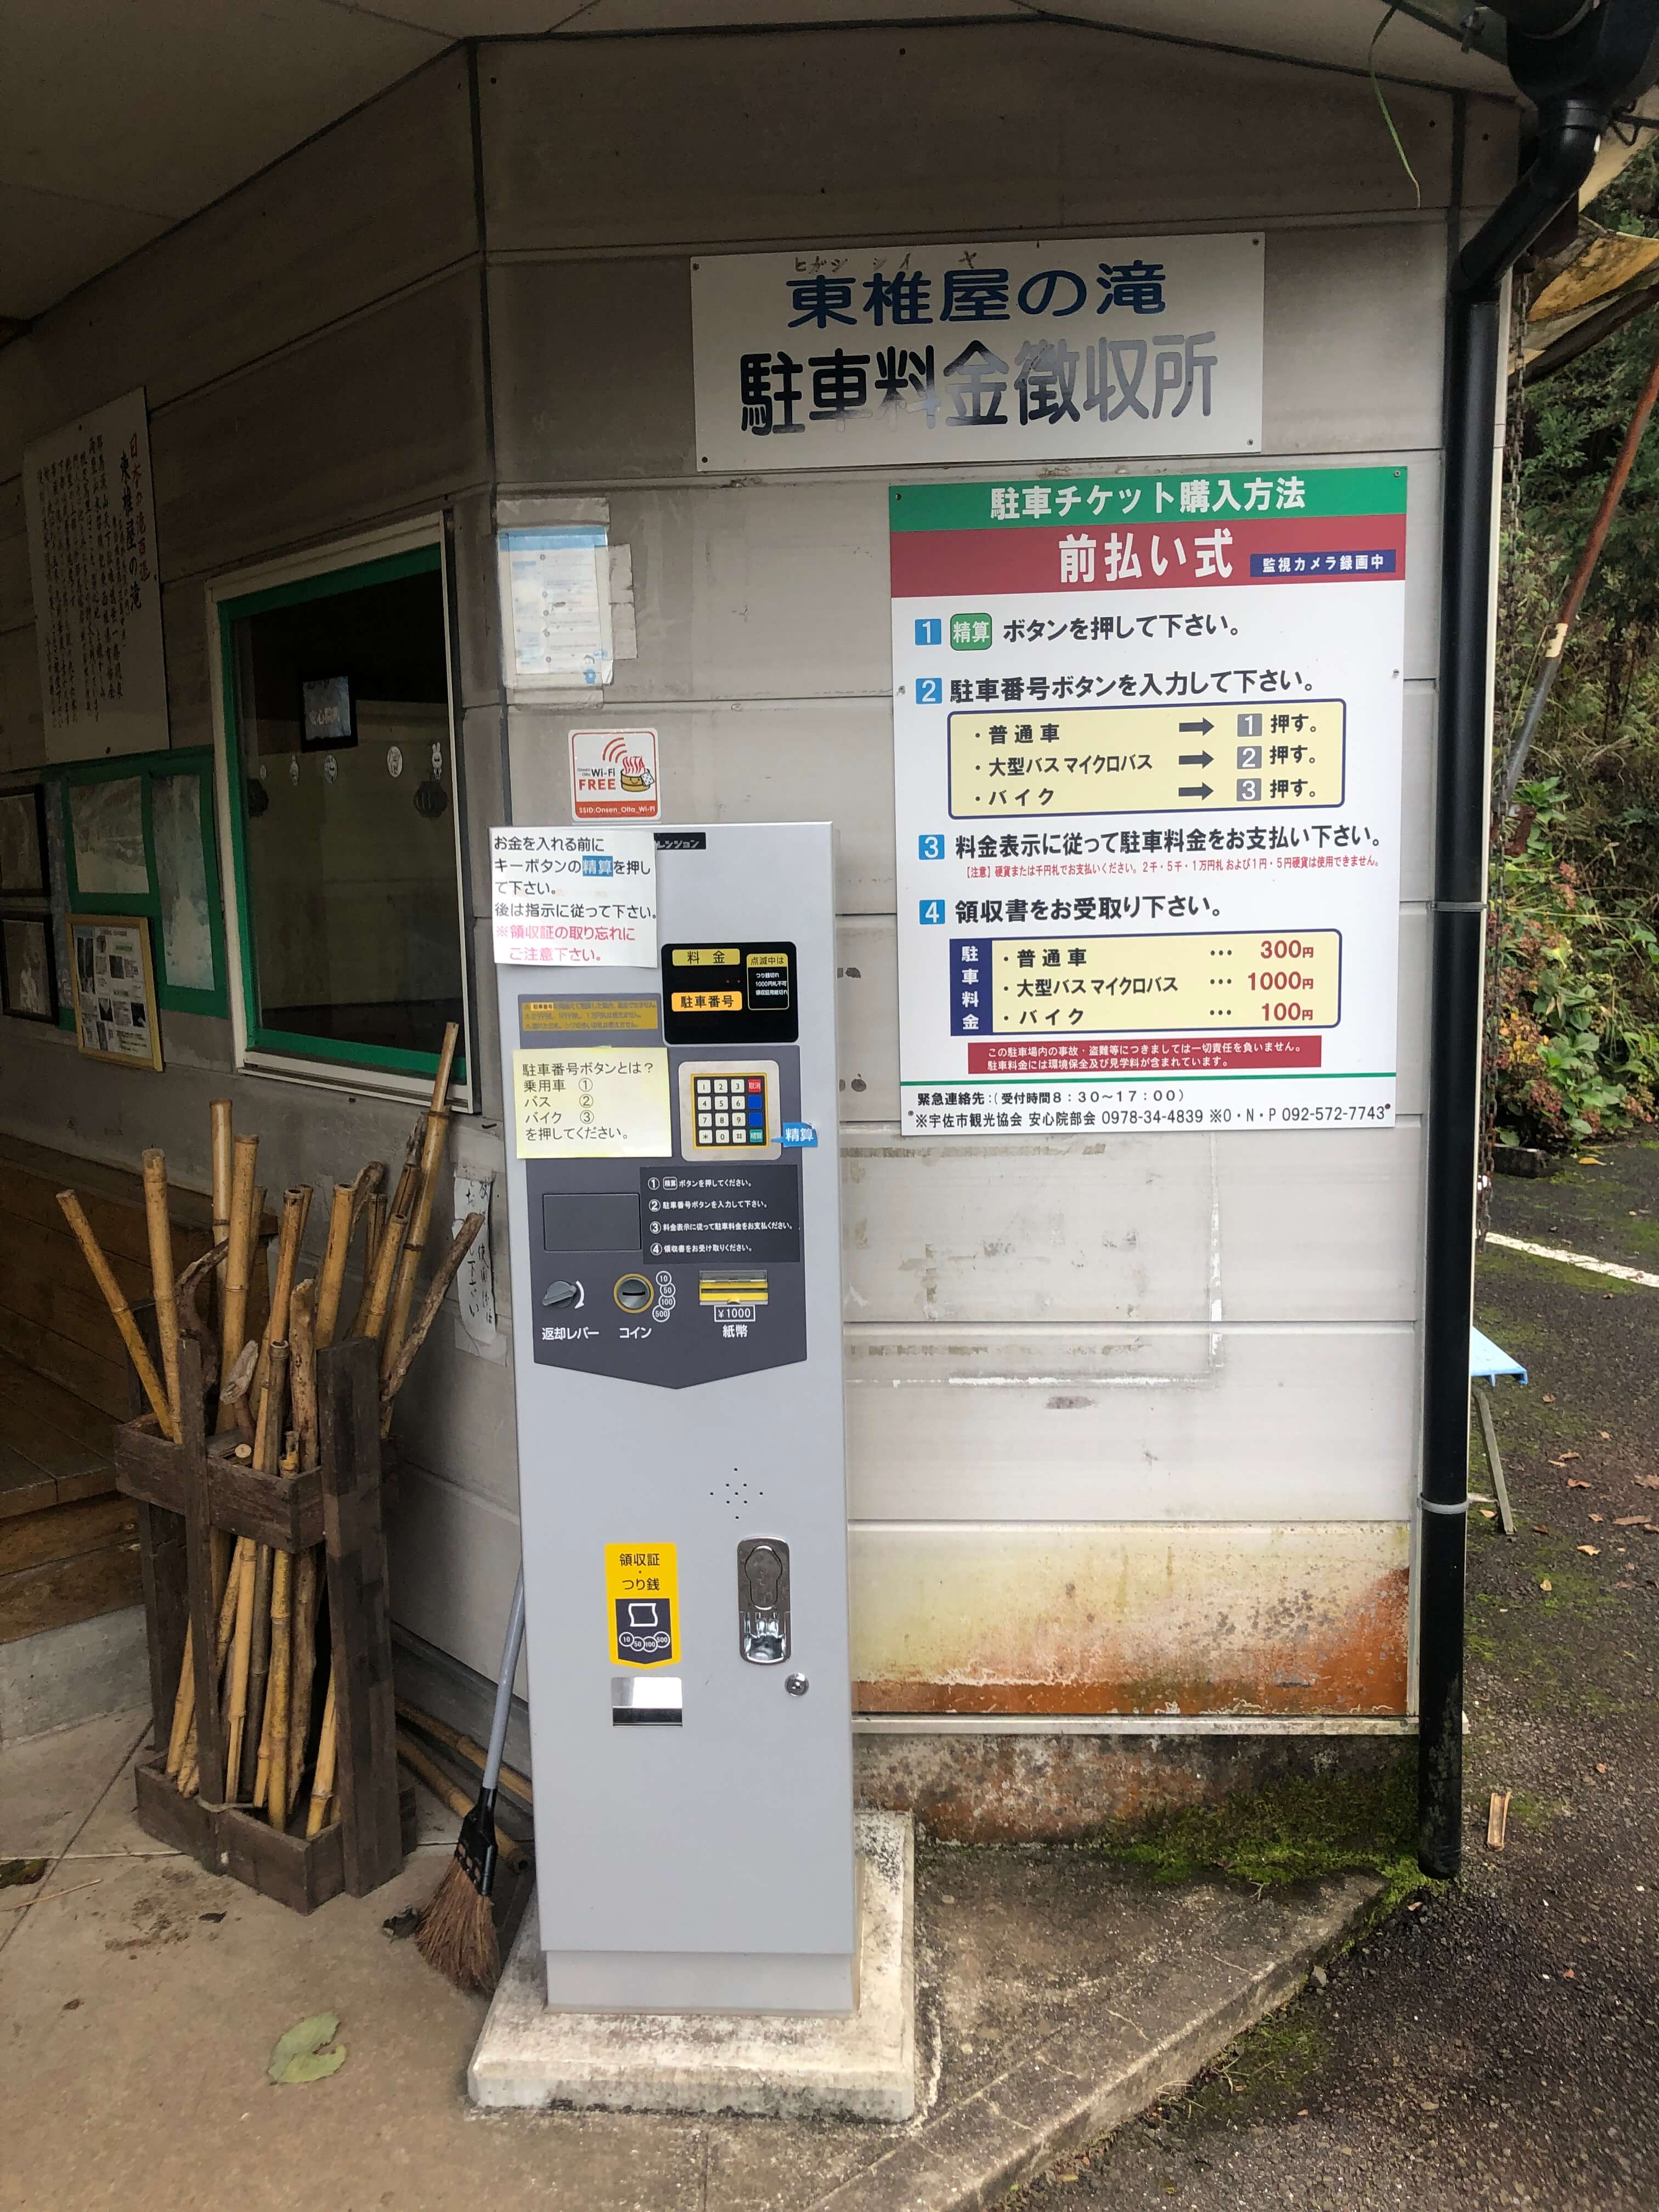 민수랜드-일본 히가시시이야노 폭포 자판기